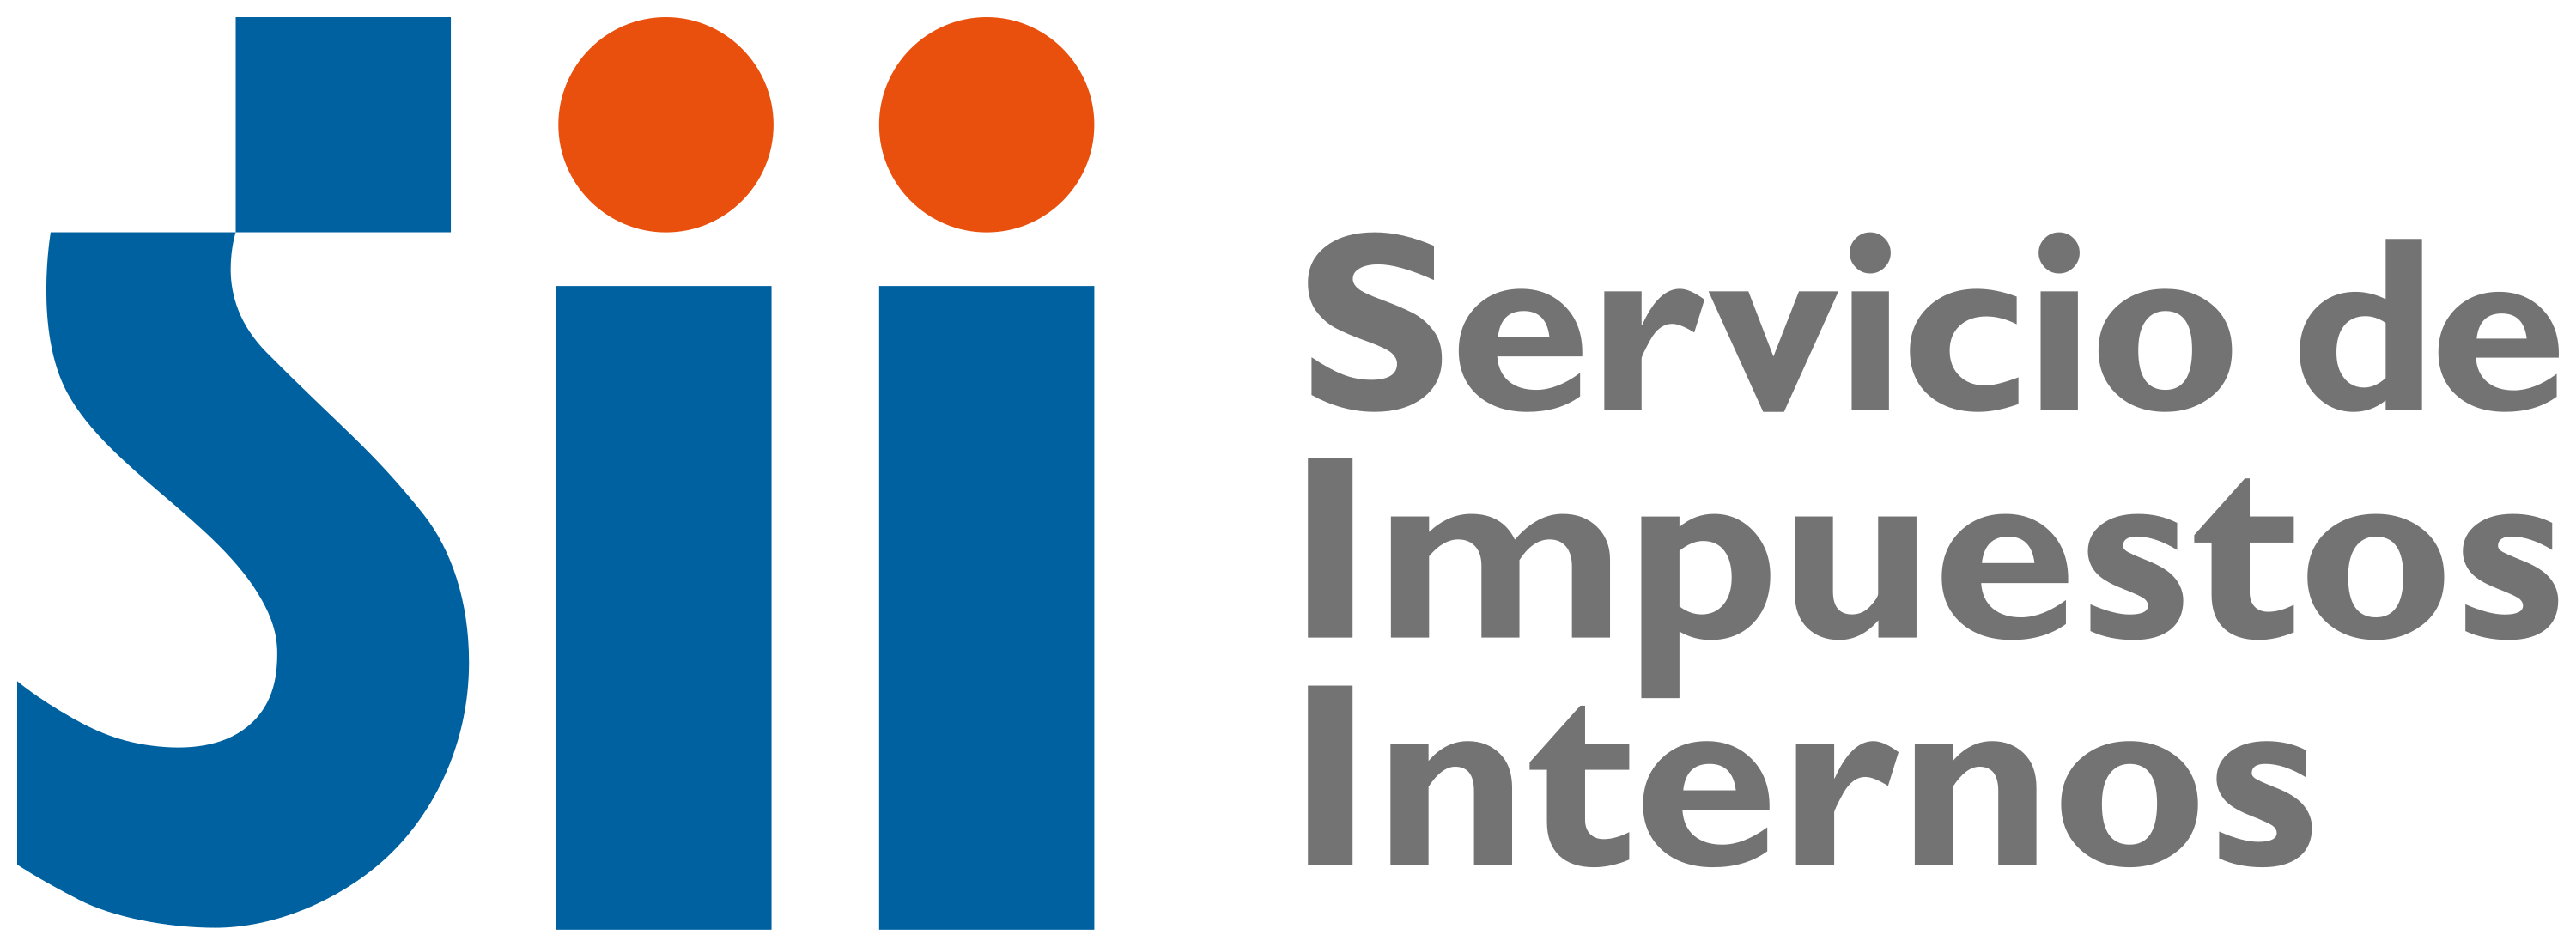 logotipo_servicio_de_impuestos_internos.svg_